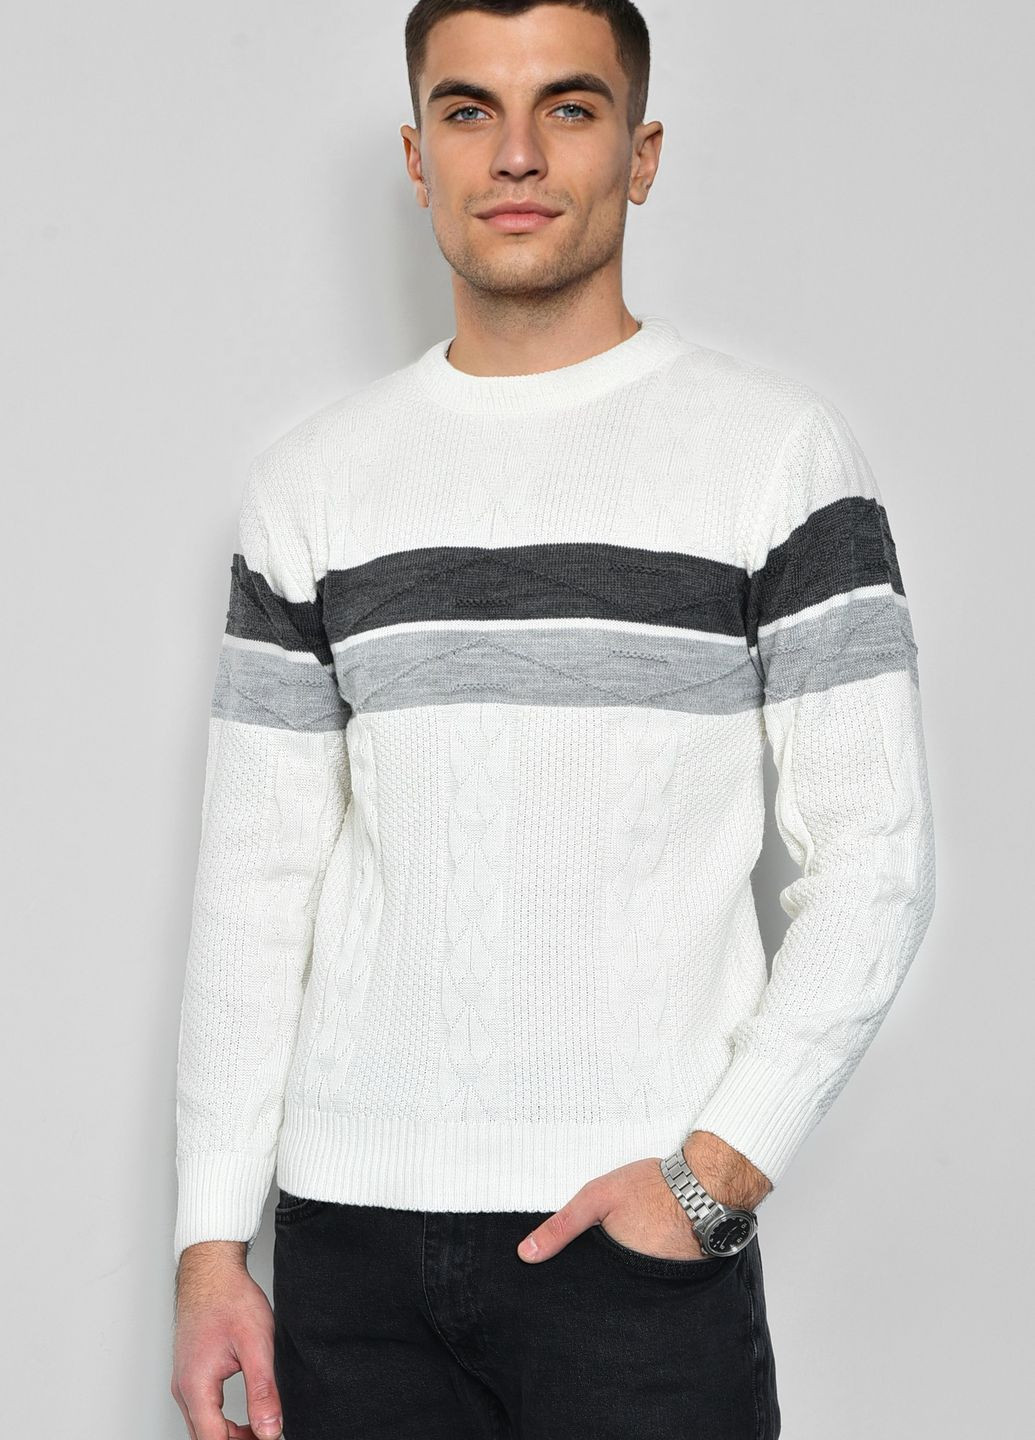 Белый демисезонный свитер мужской белого цвета пуловер Let's Shop